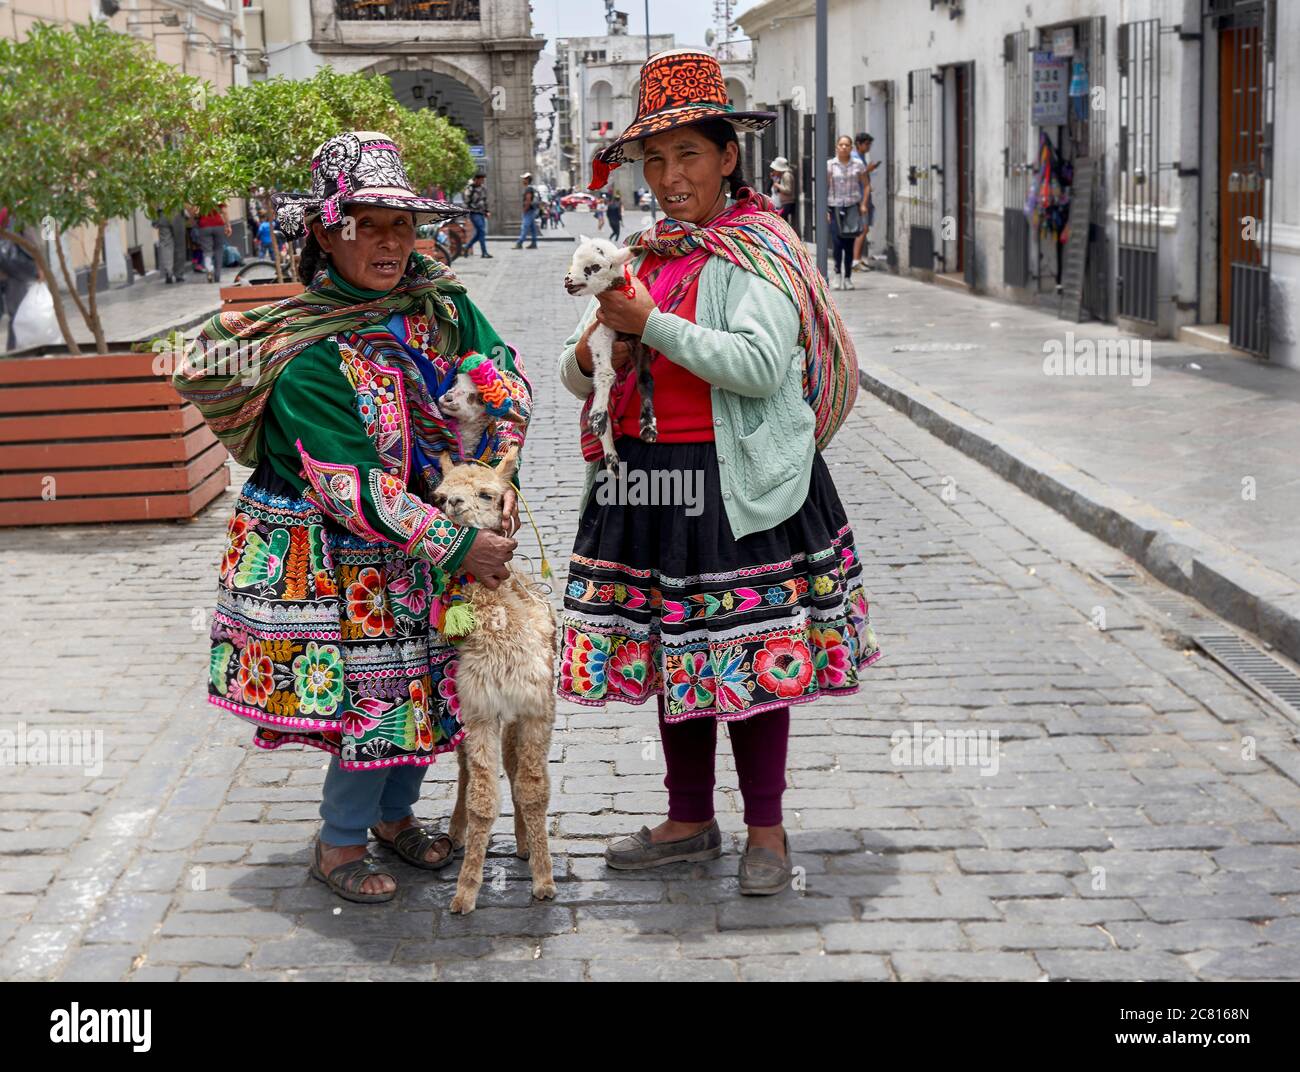 Inca dames posant pour des photos touristiques à Arequipa Banque D'Images